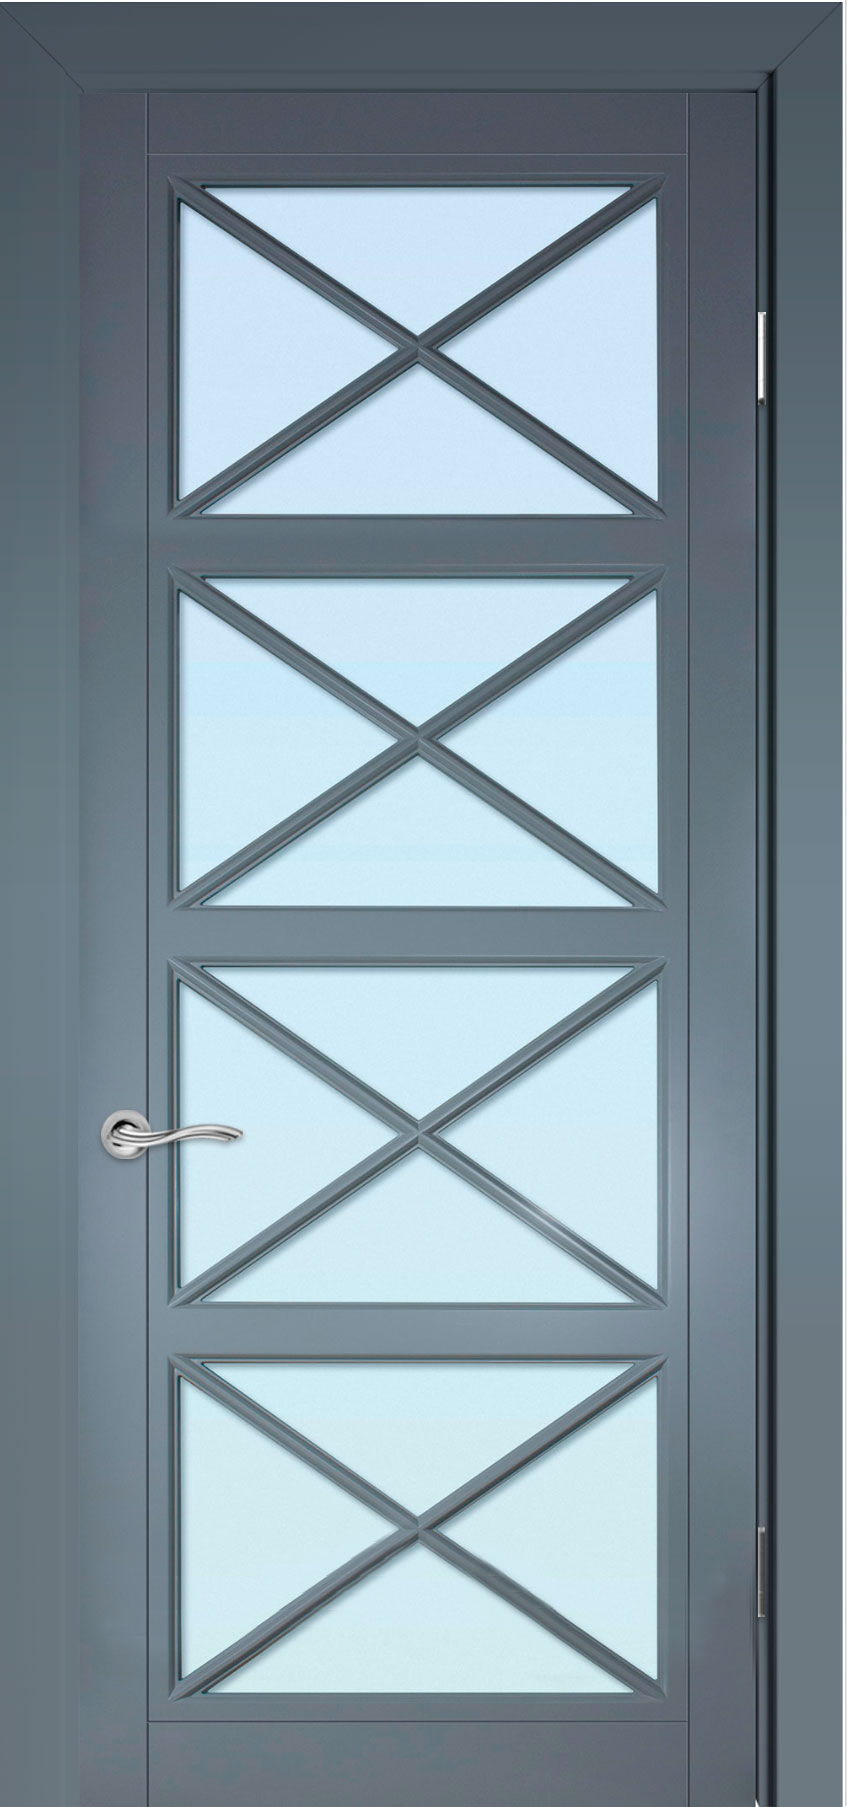 межкомнатные двери  Прованс Квадро с вкладной решёткой тип 101 эмаль